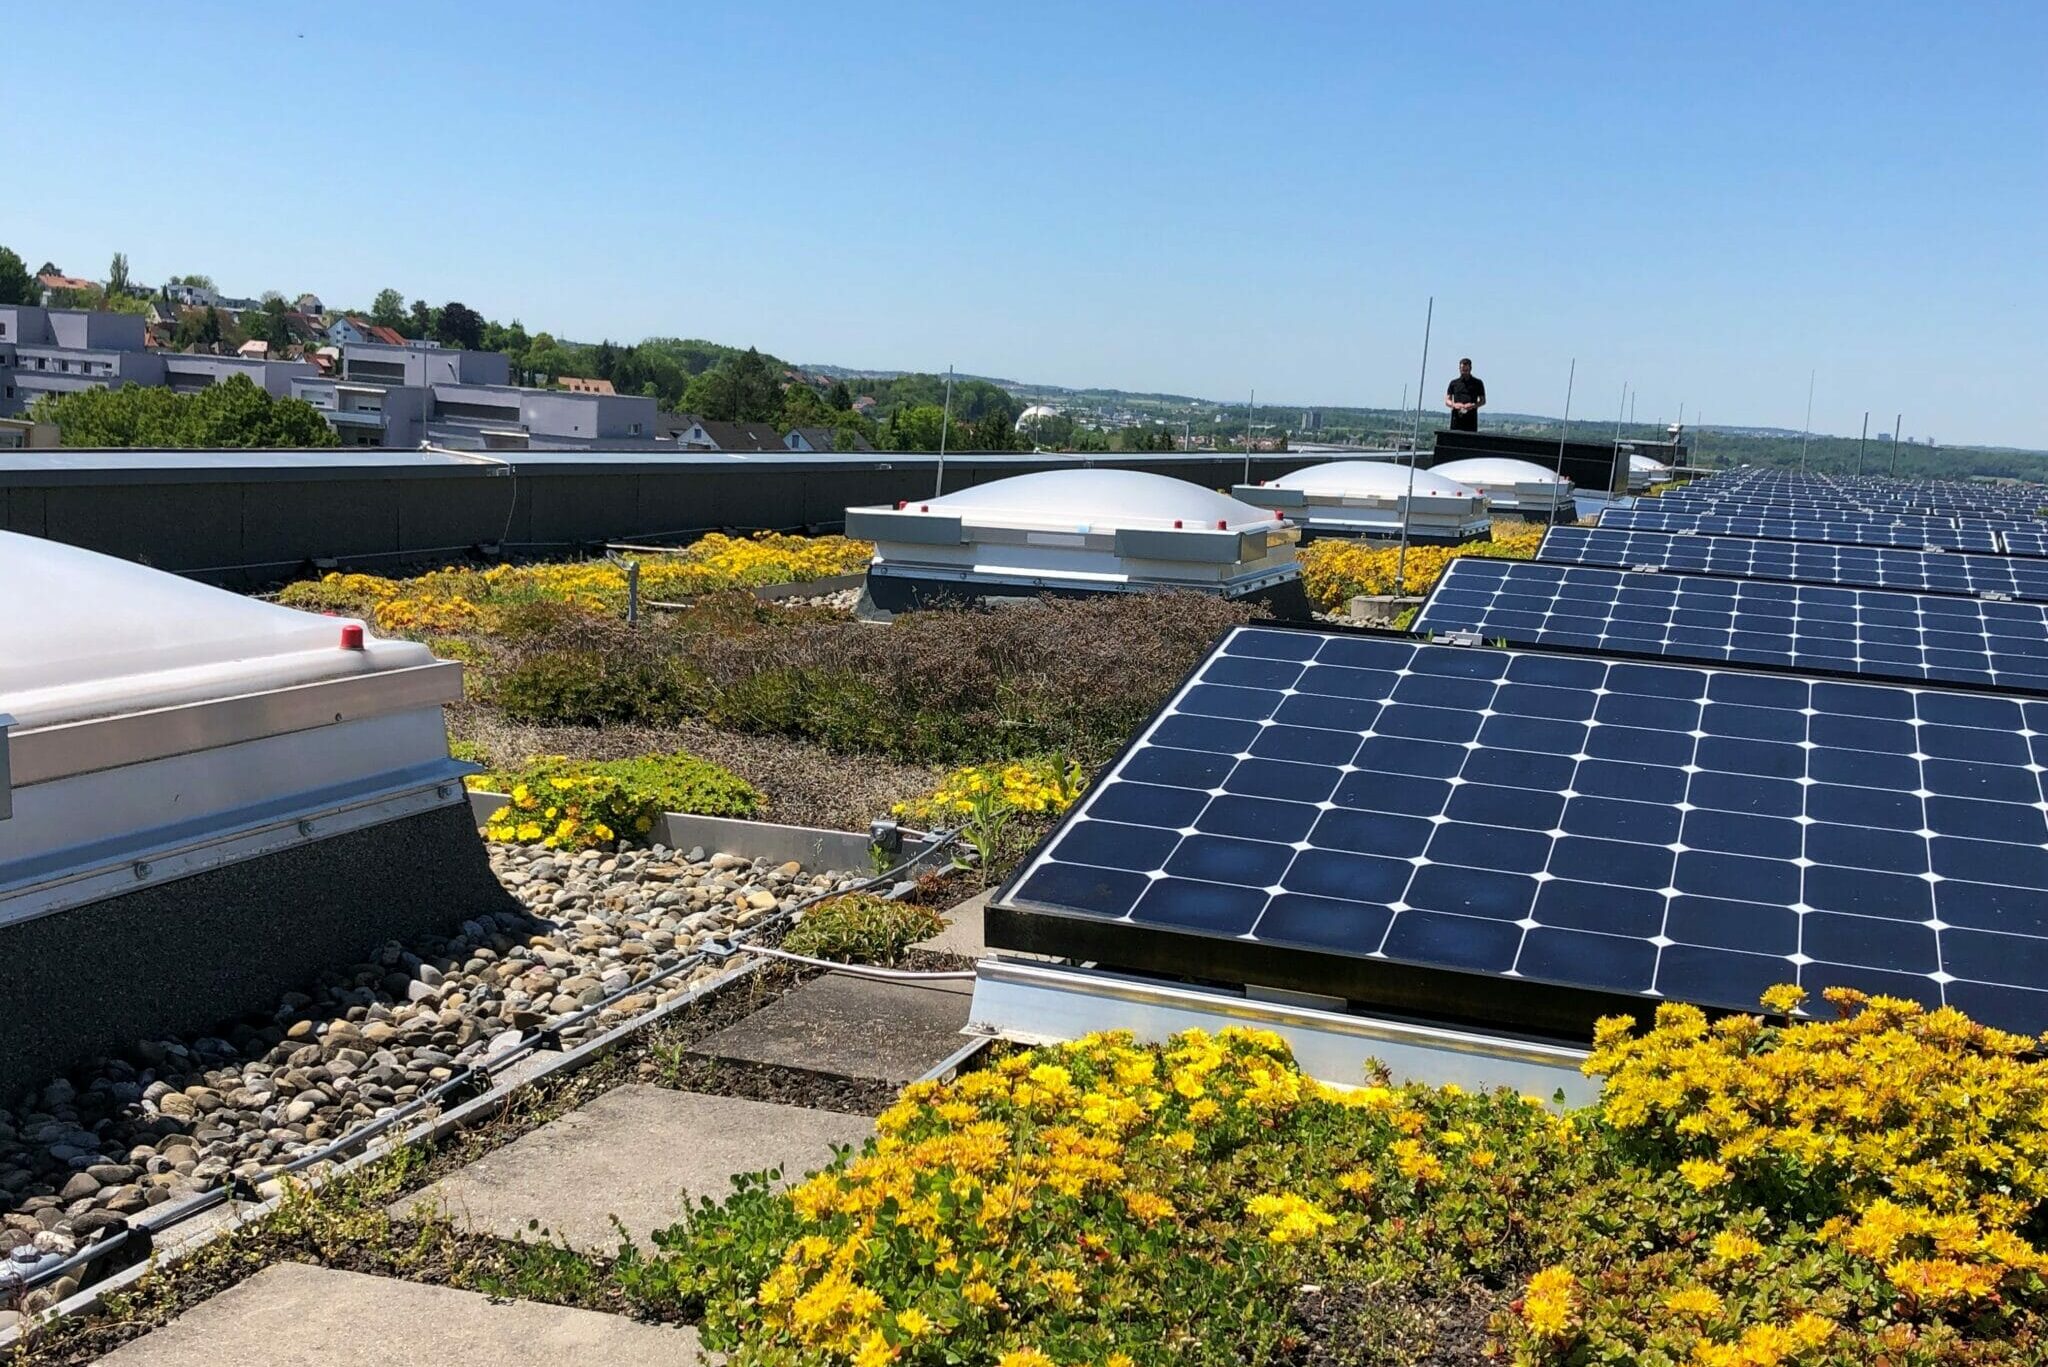 Das begrünte Dach sowie die hauseigene Photovoltaik-Anlage tragen zum Nachhaltigkeitskonzept der Stadthalle Reutlingen ihren Teil bei.